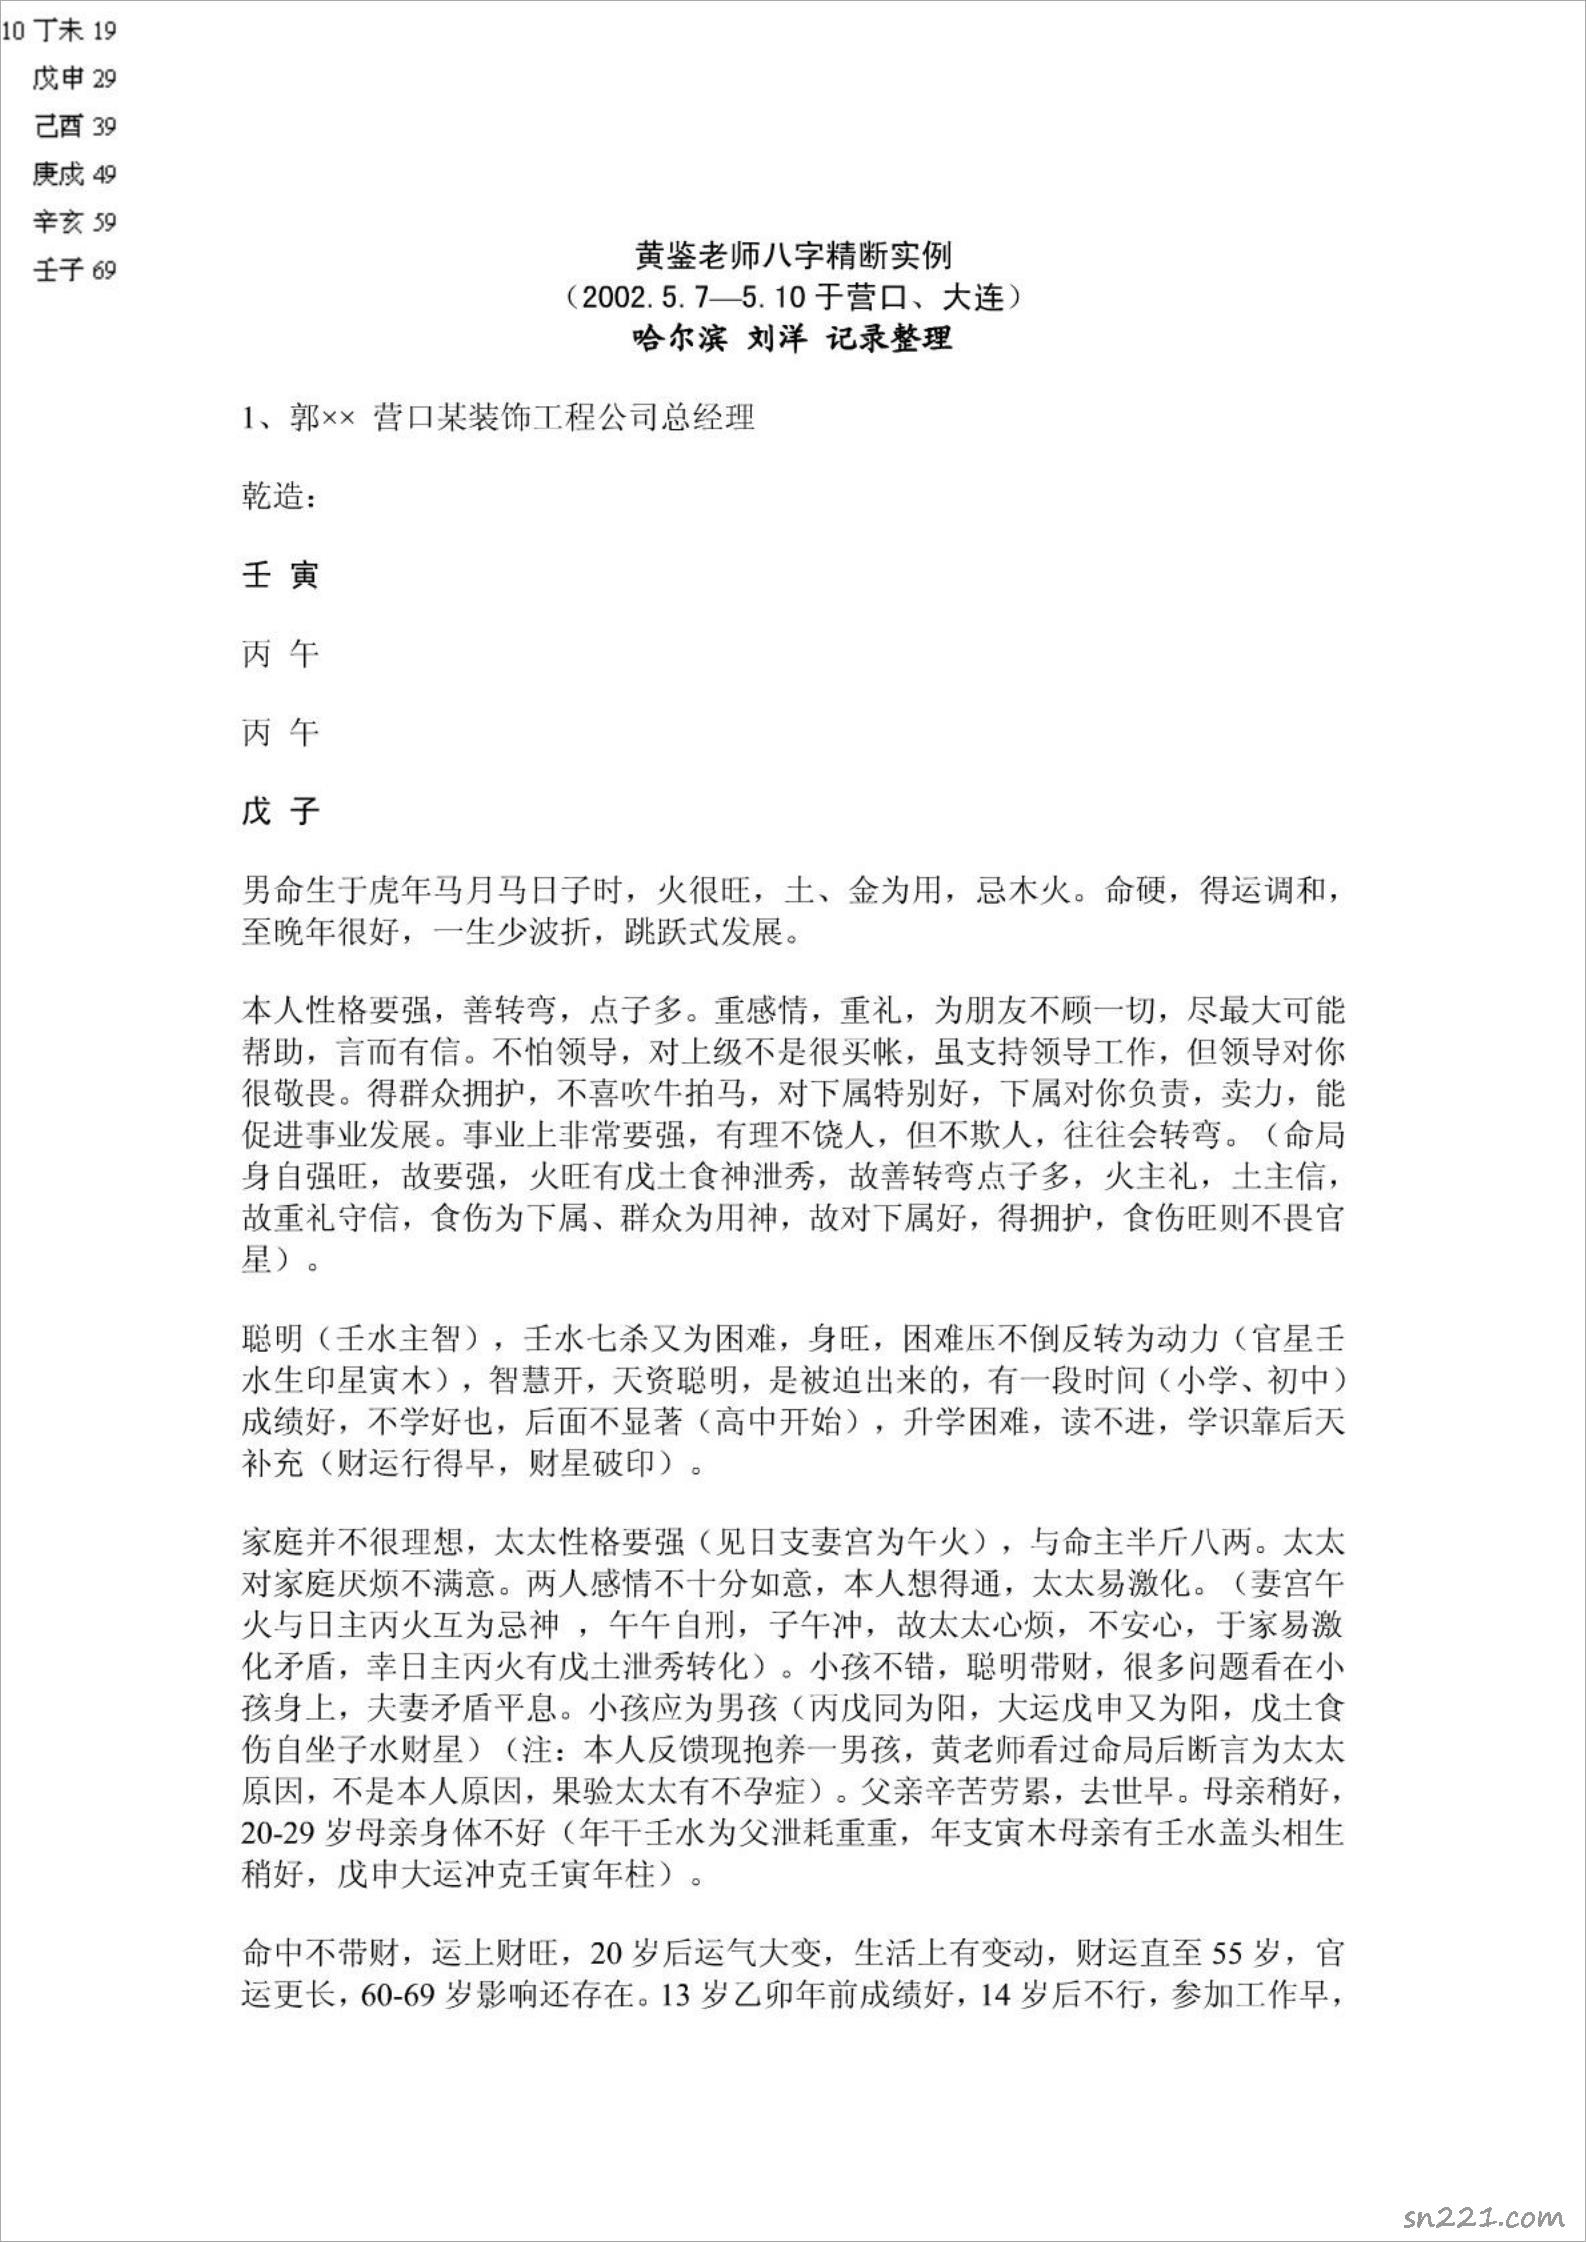 黃鑒-四柱風水128頁.pdf